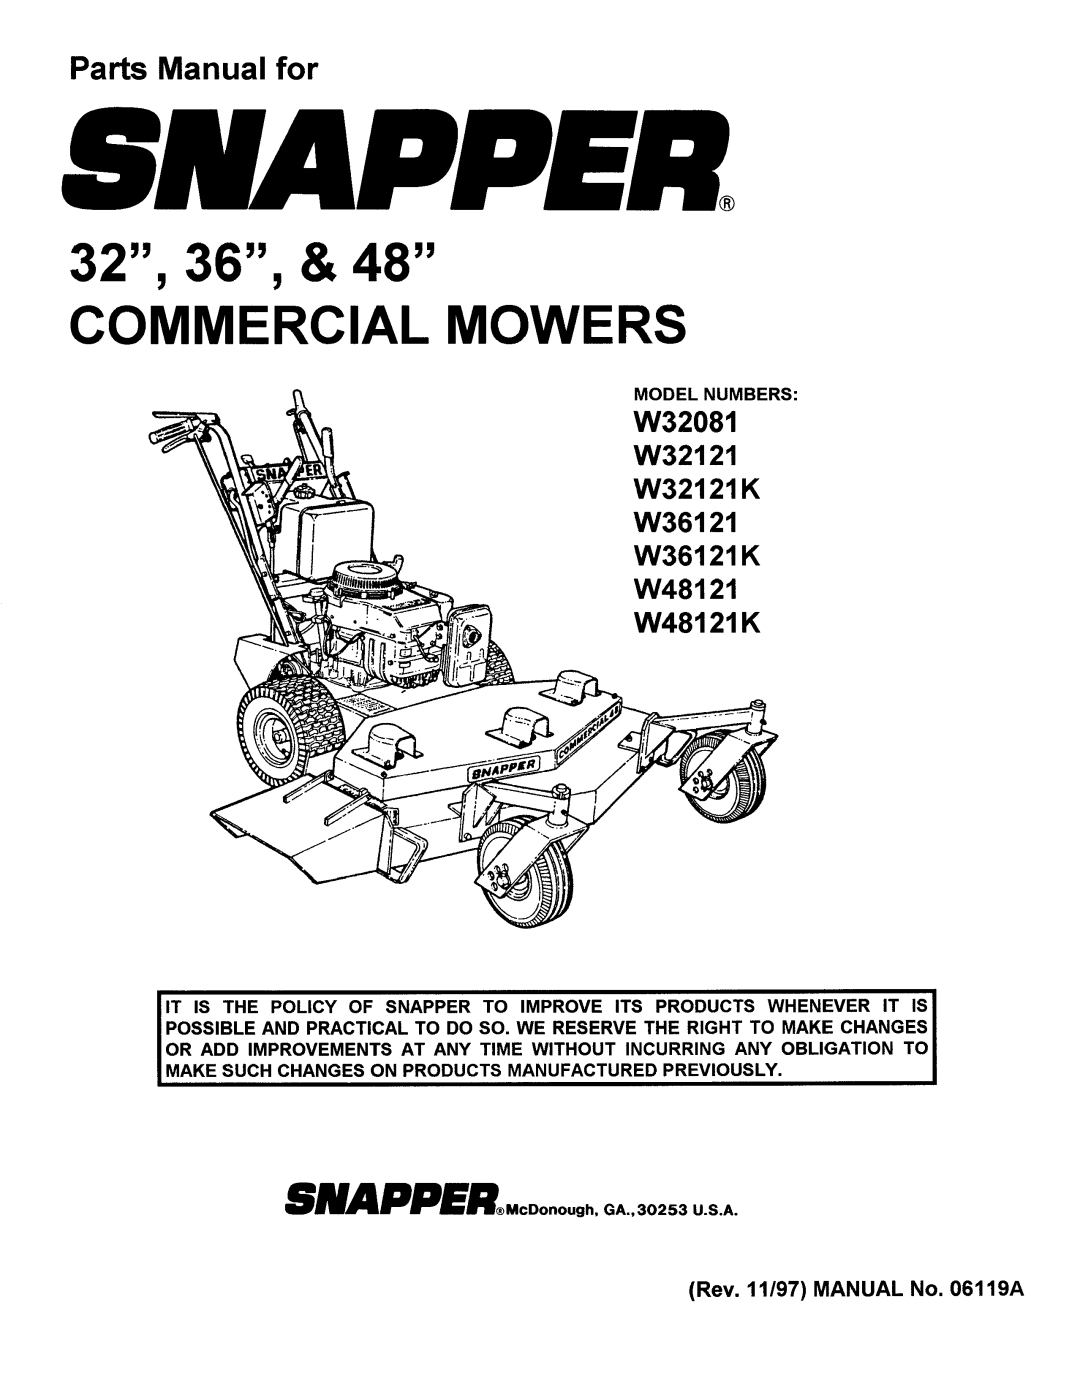 Snapper W48121K, W32121K, W36121K, W32081 manual 